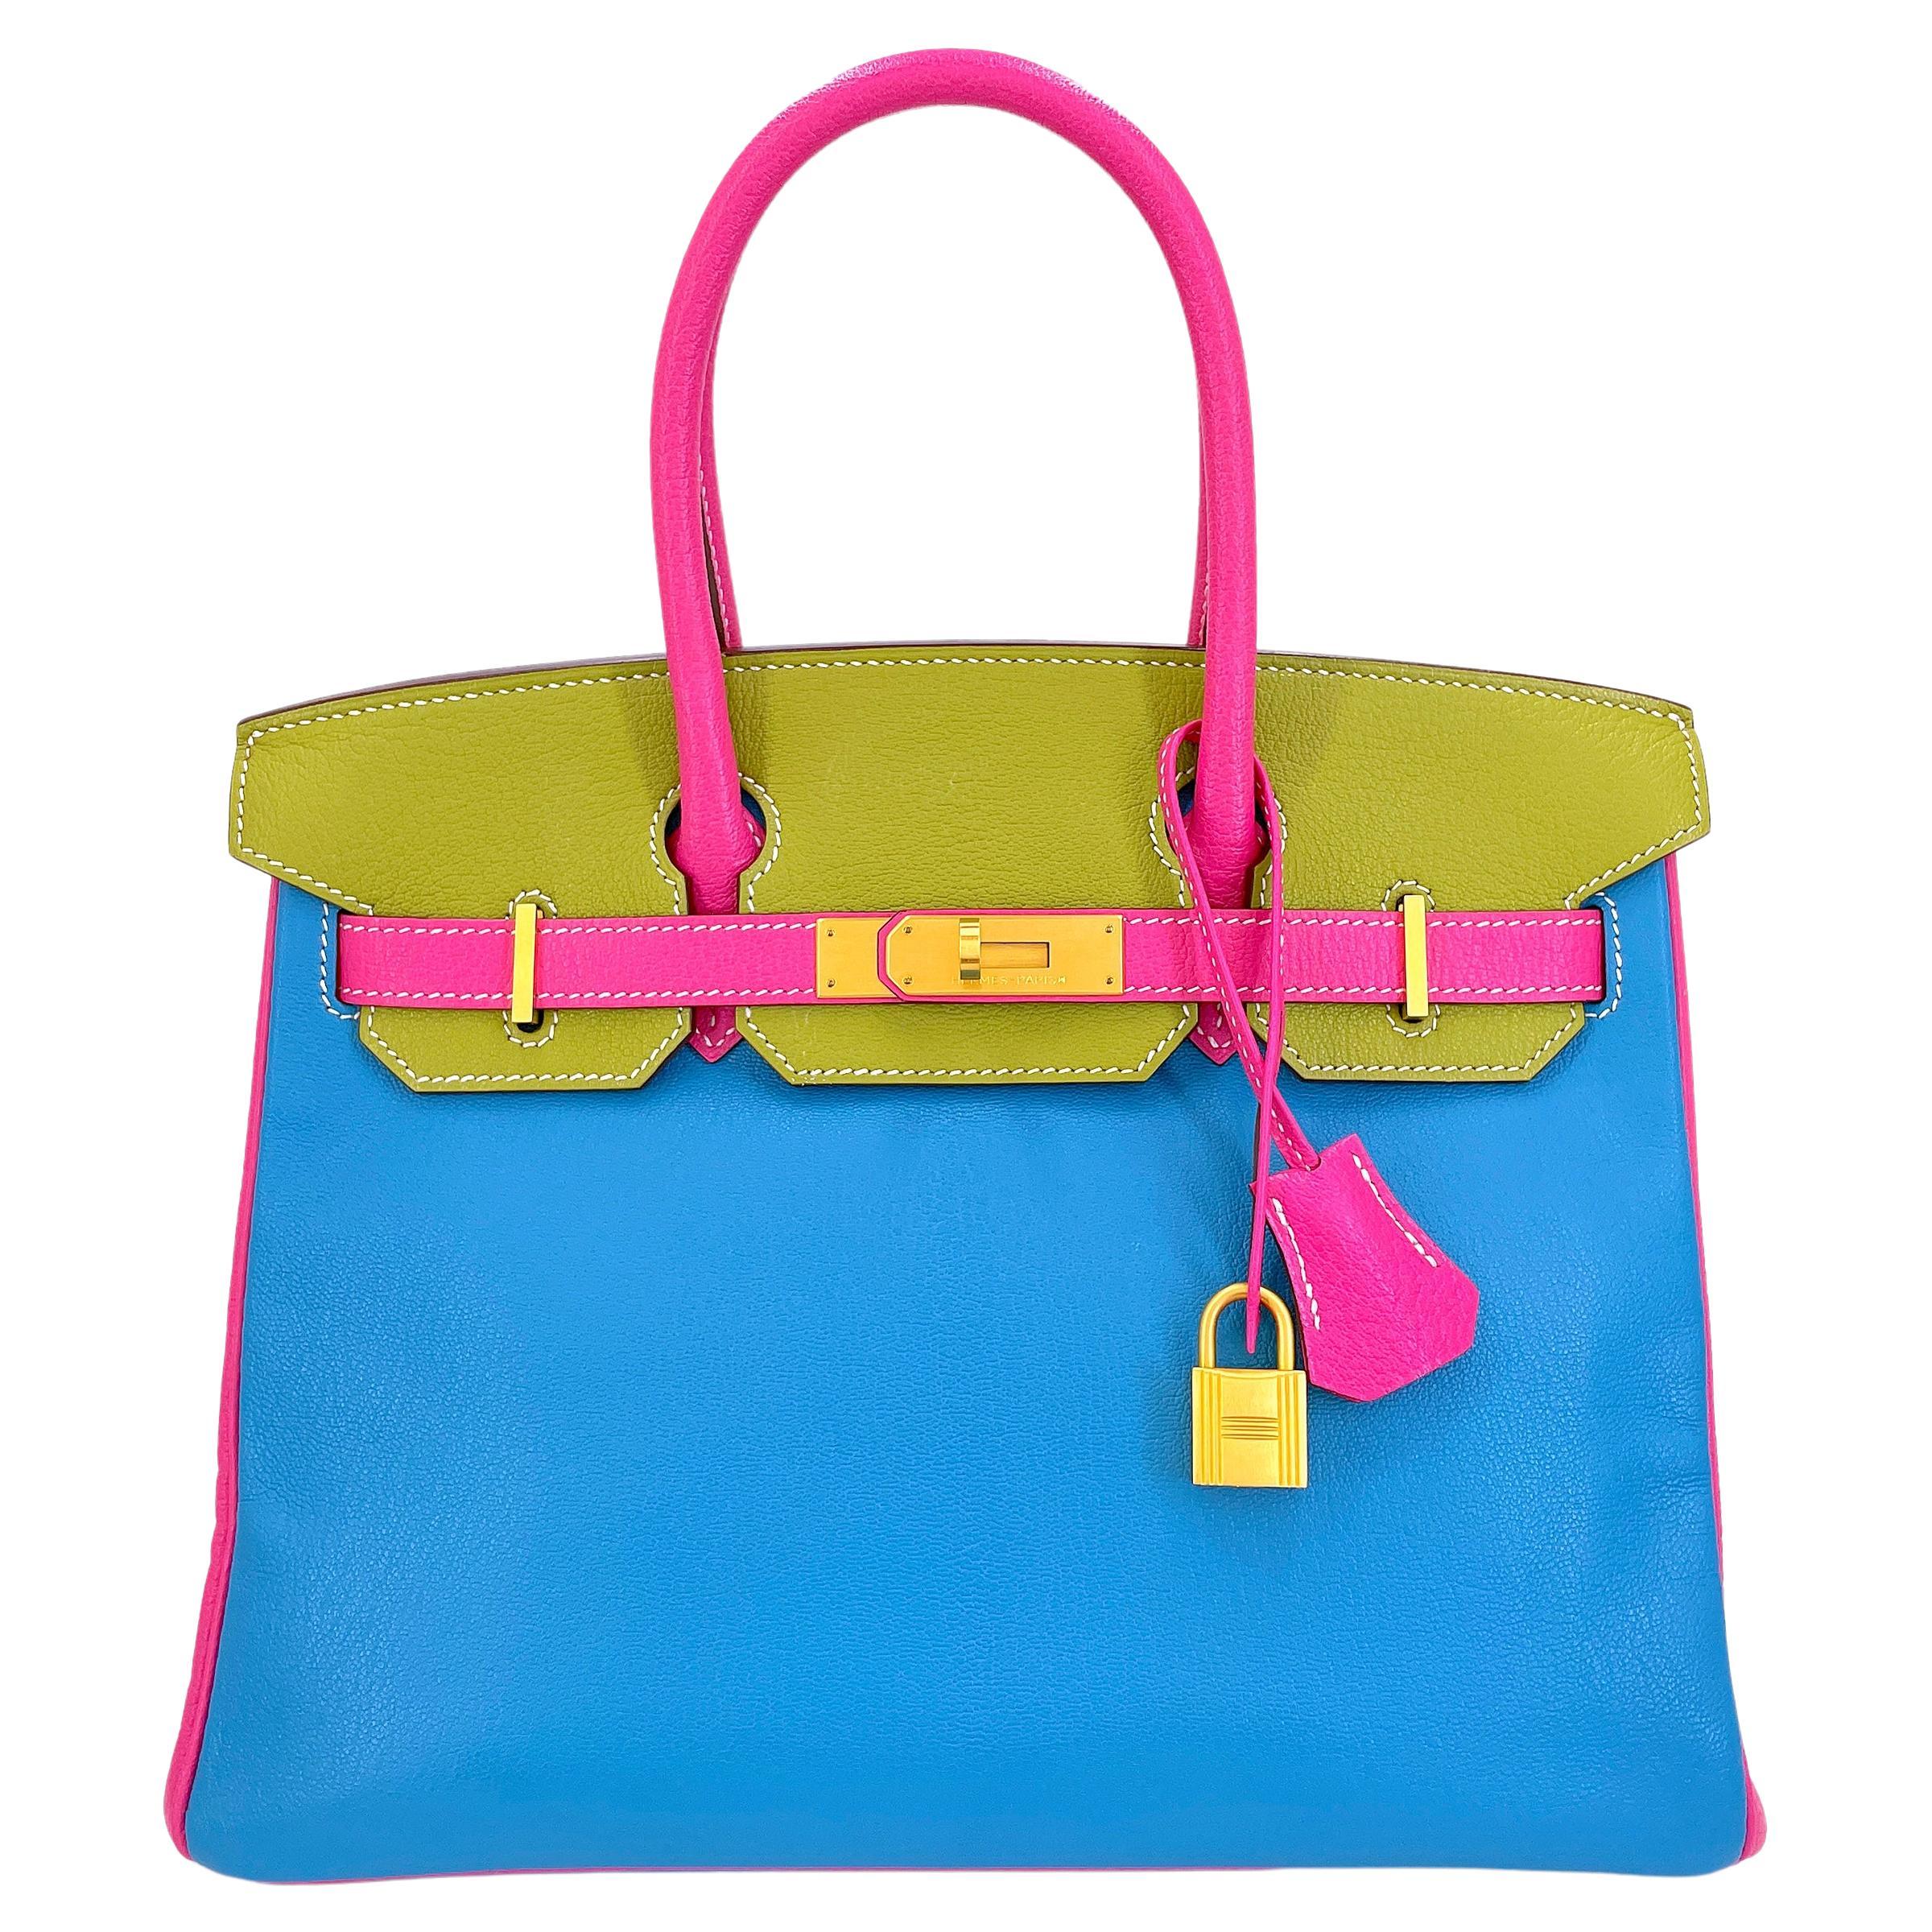 Hermès Special Order Chèvre 30cm Birkin Brushed Gold Pink Green Blue Bag 68121 For Sale